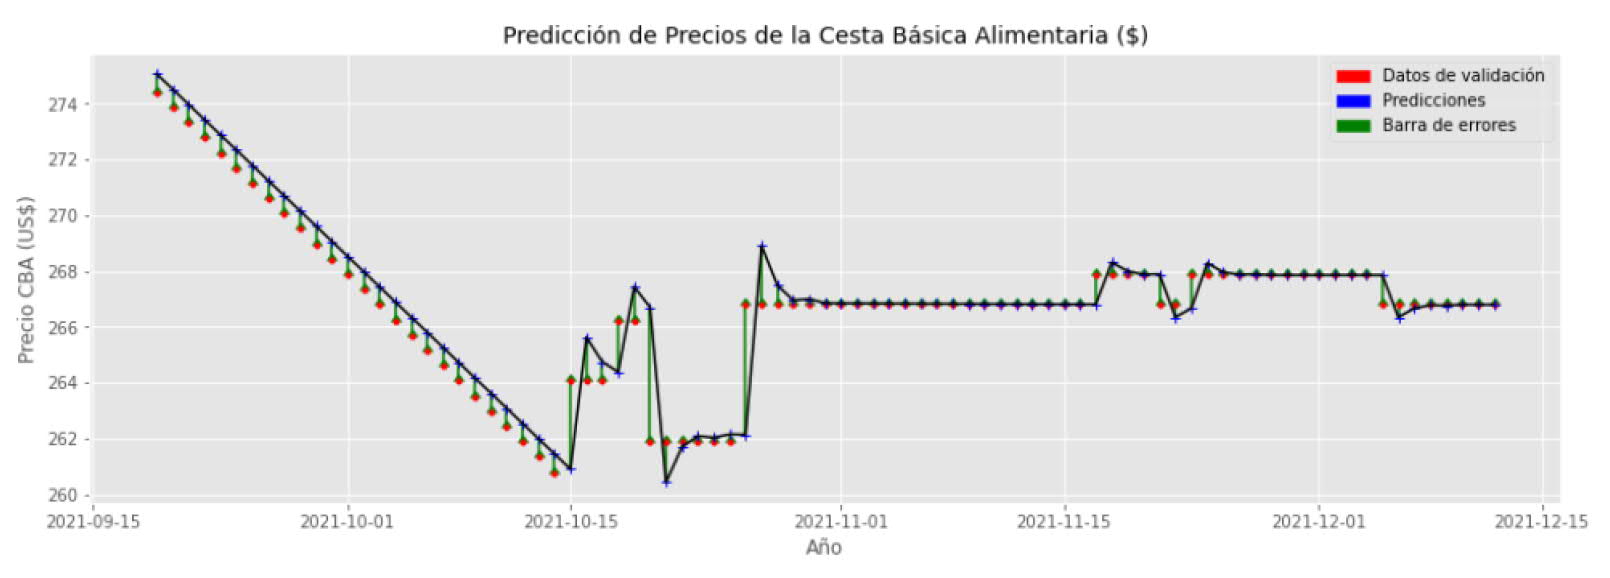 Gráfica de predicción de datos para el método que estima el precio de los alimentos